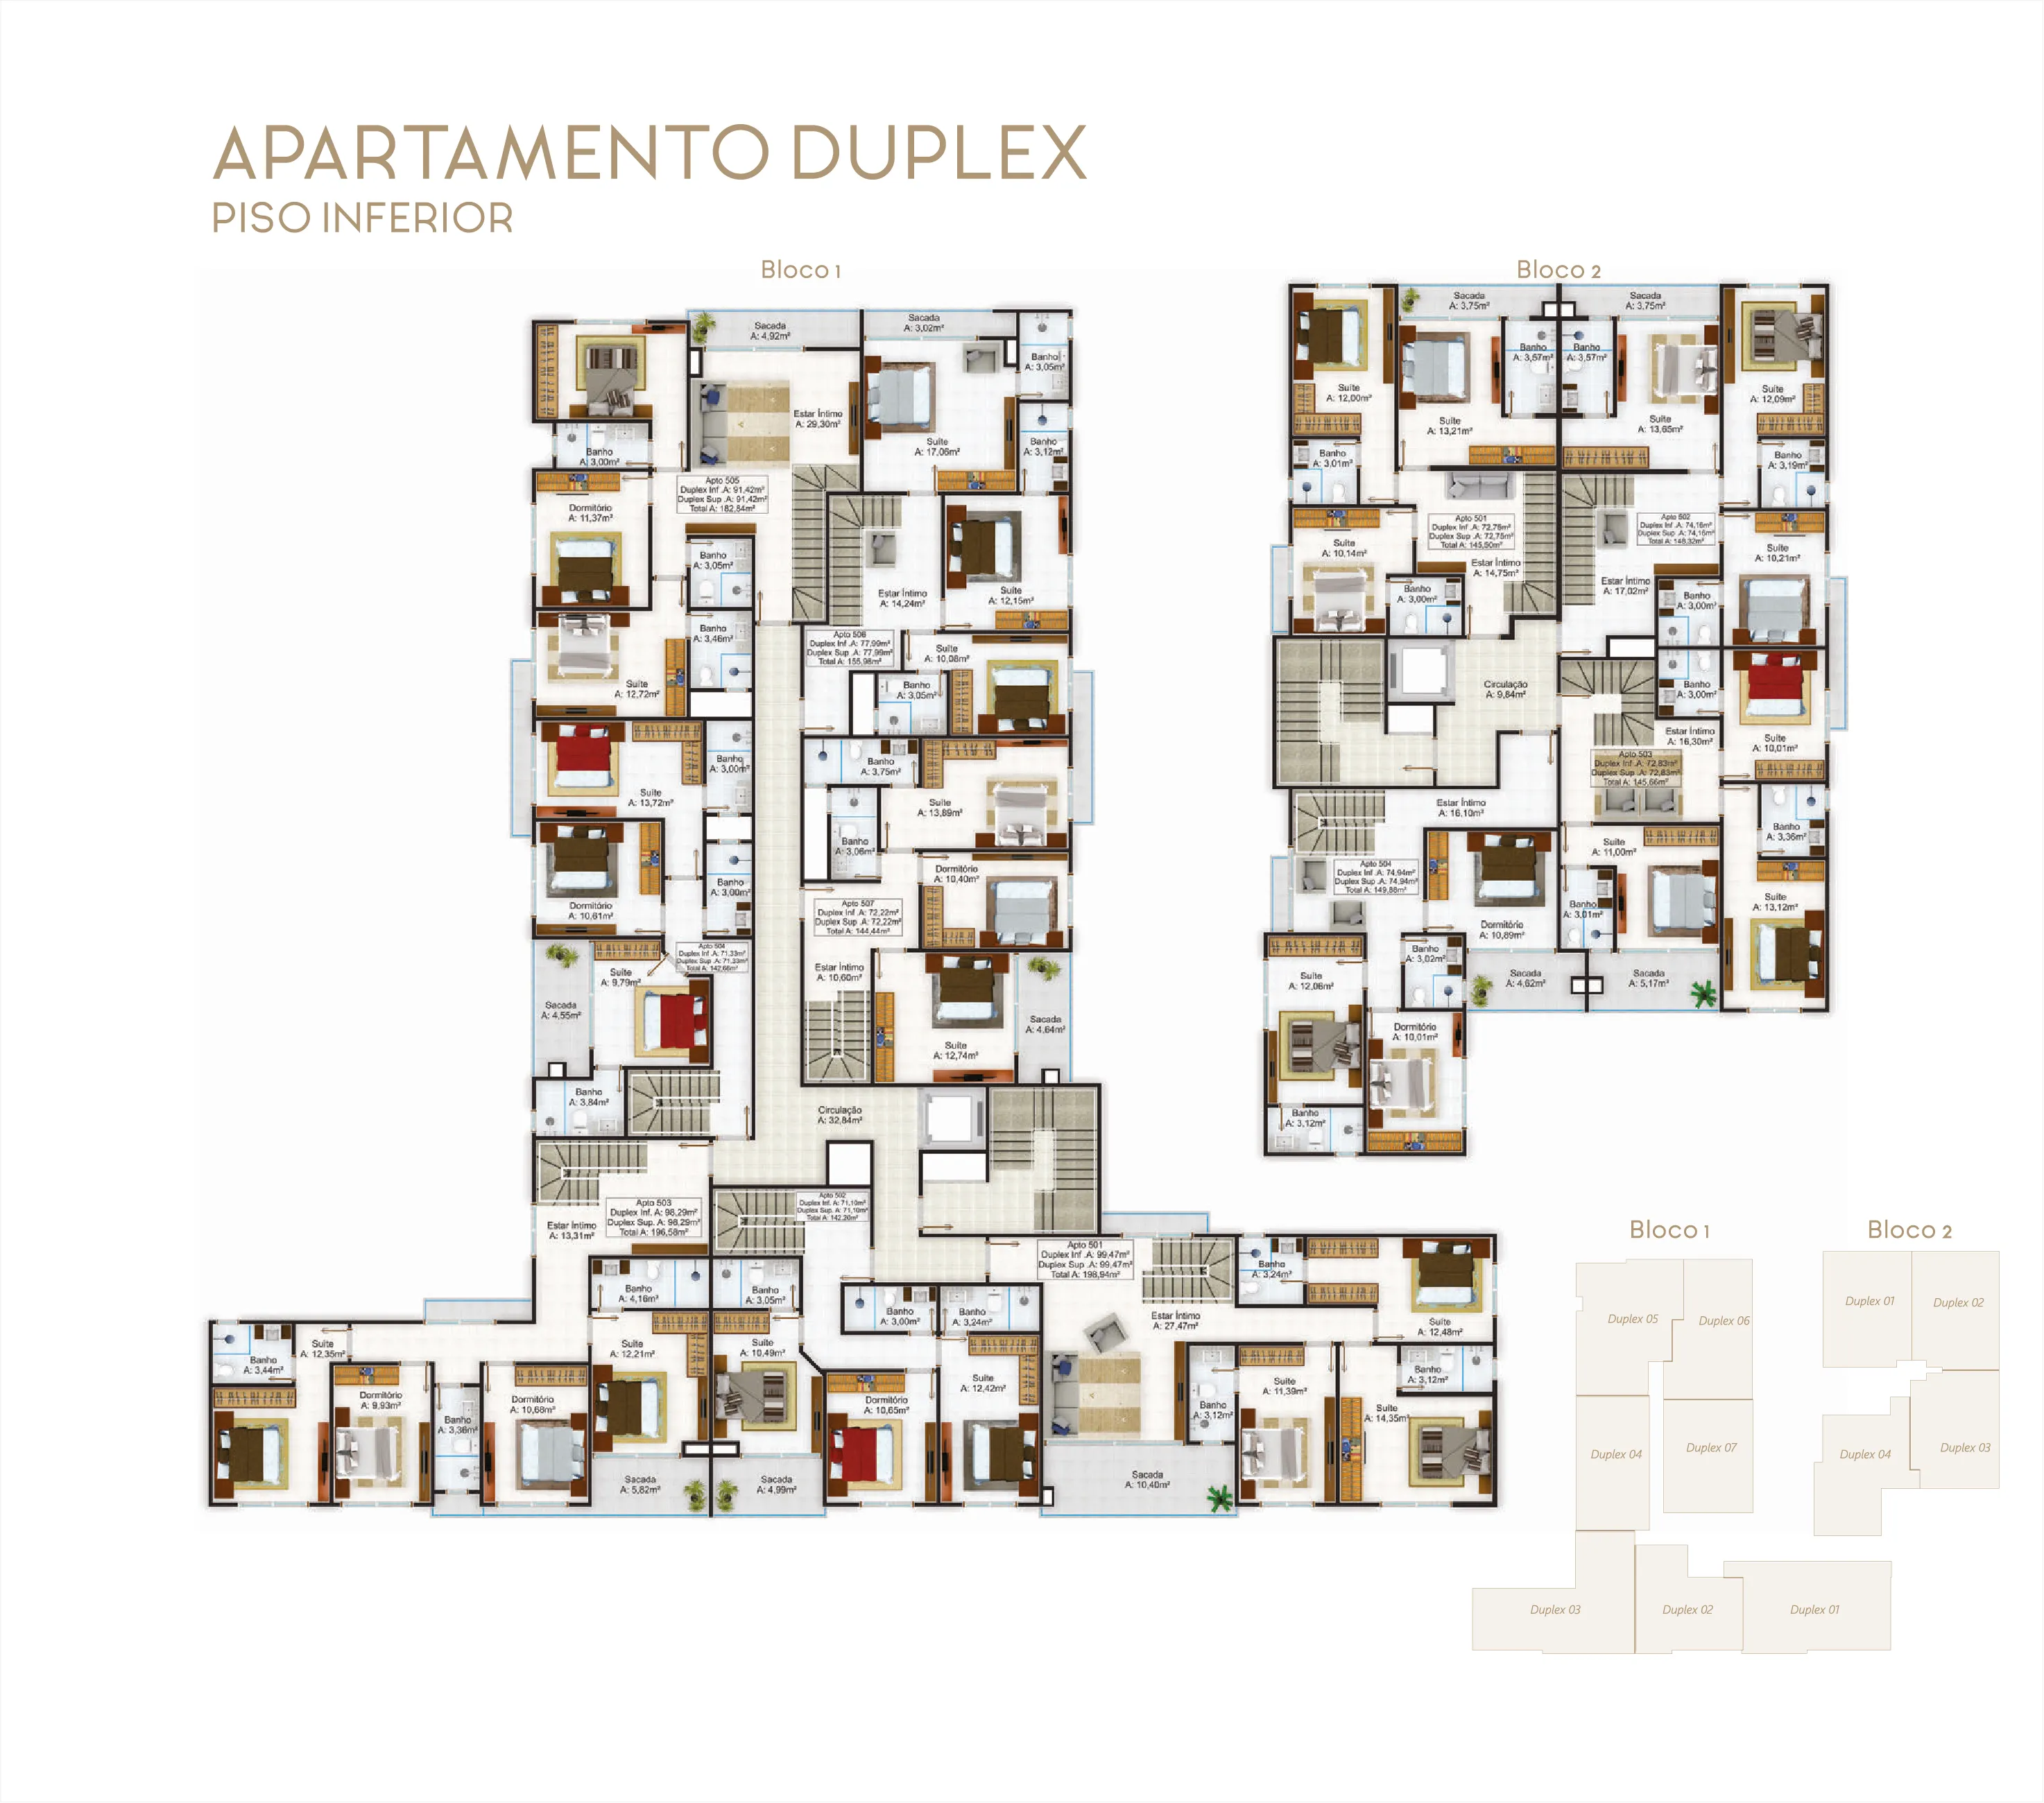 Apartamento - Duplex piso inferior